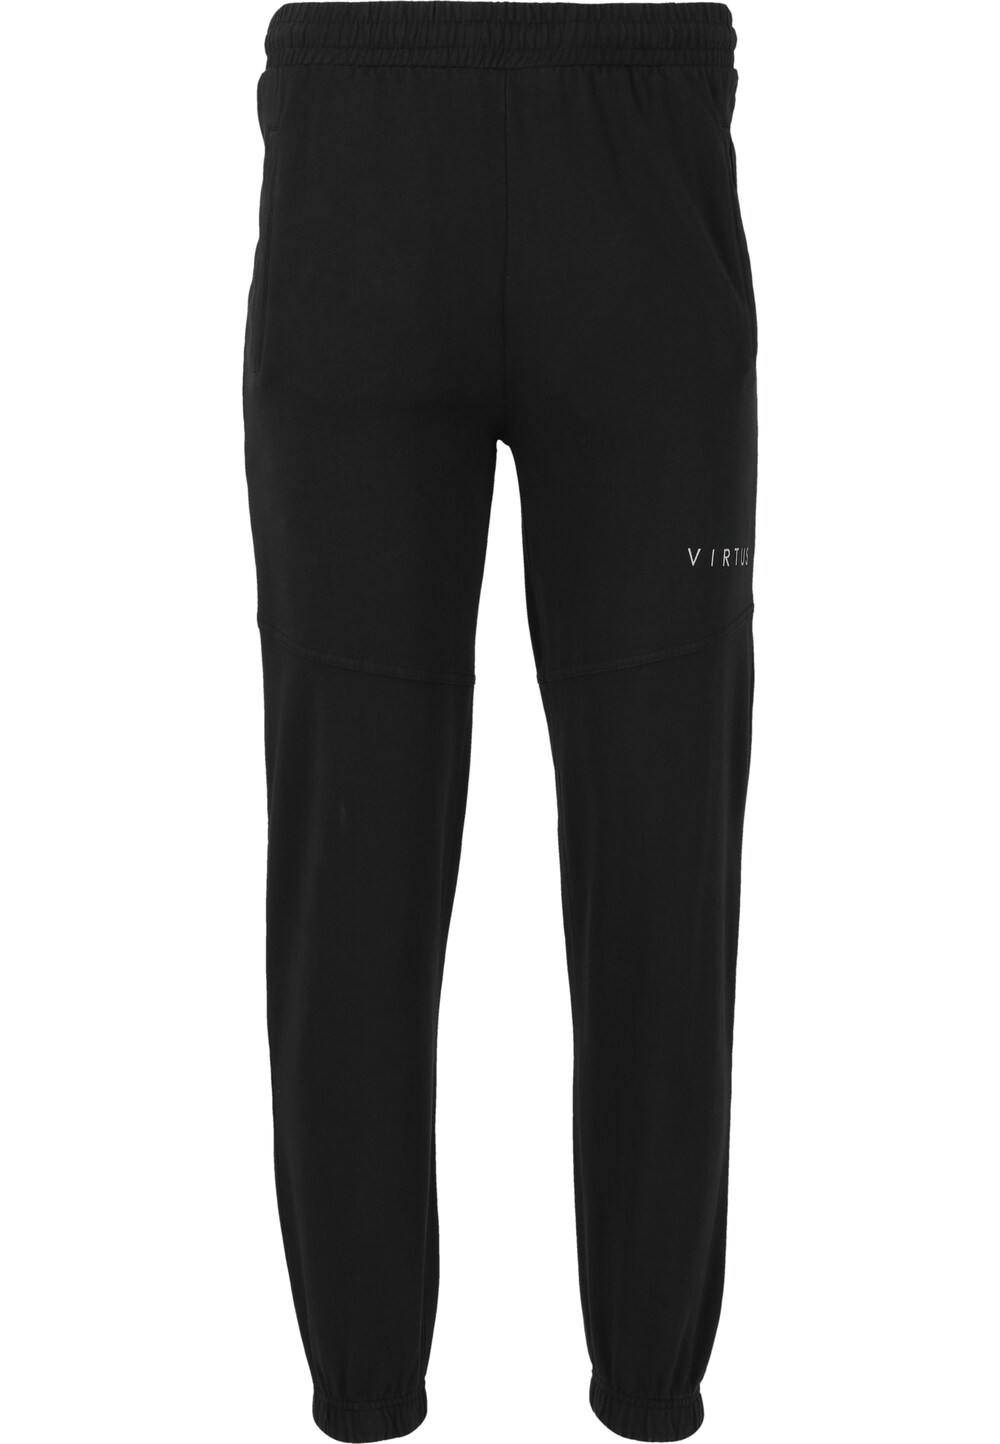 Обычные тренировочные брюки Virtus Bold, черный обычные тренировочные брюки virtus черный